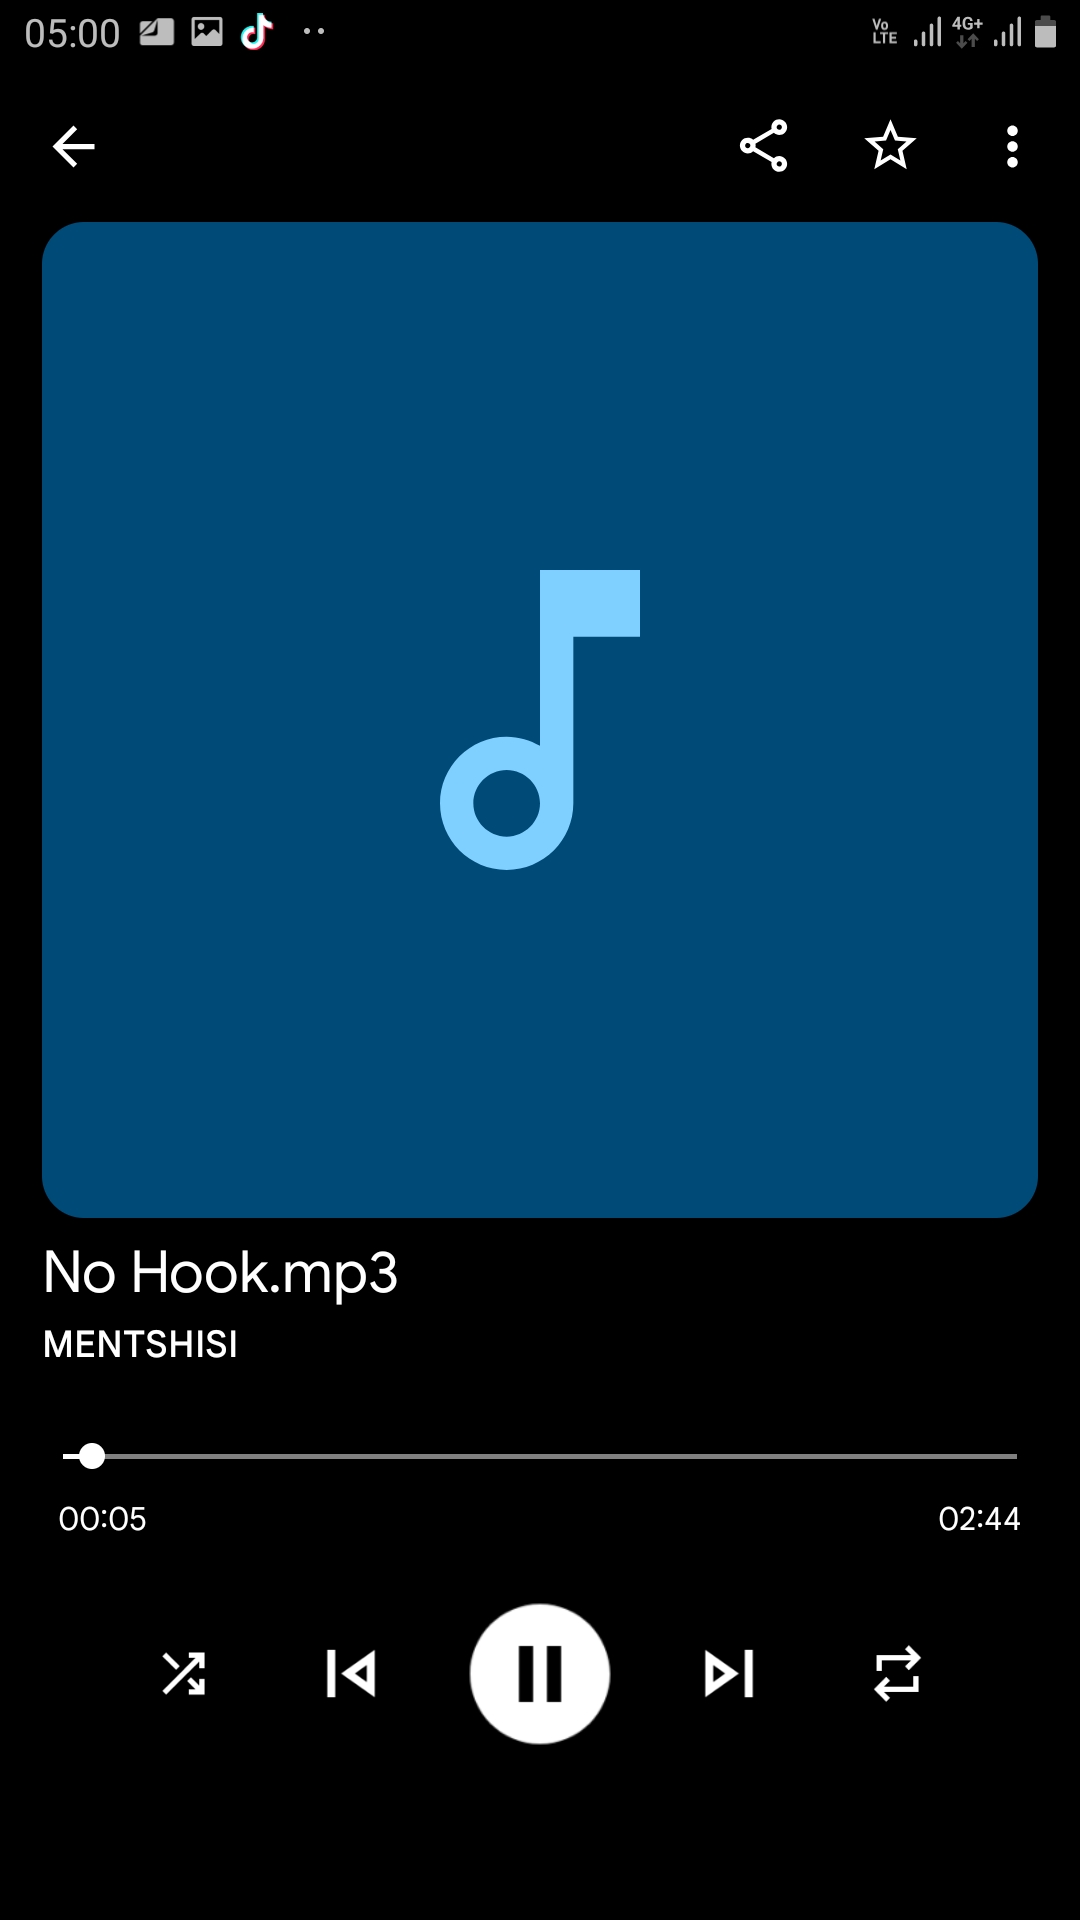 No Hook - Mentshisi